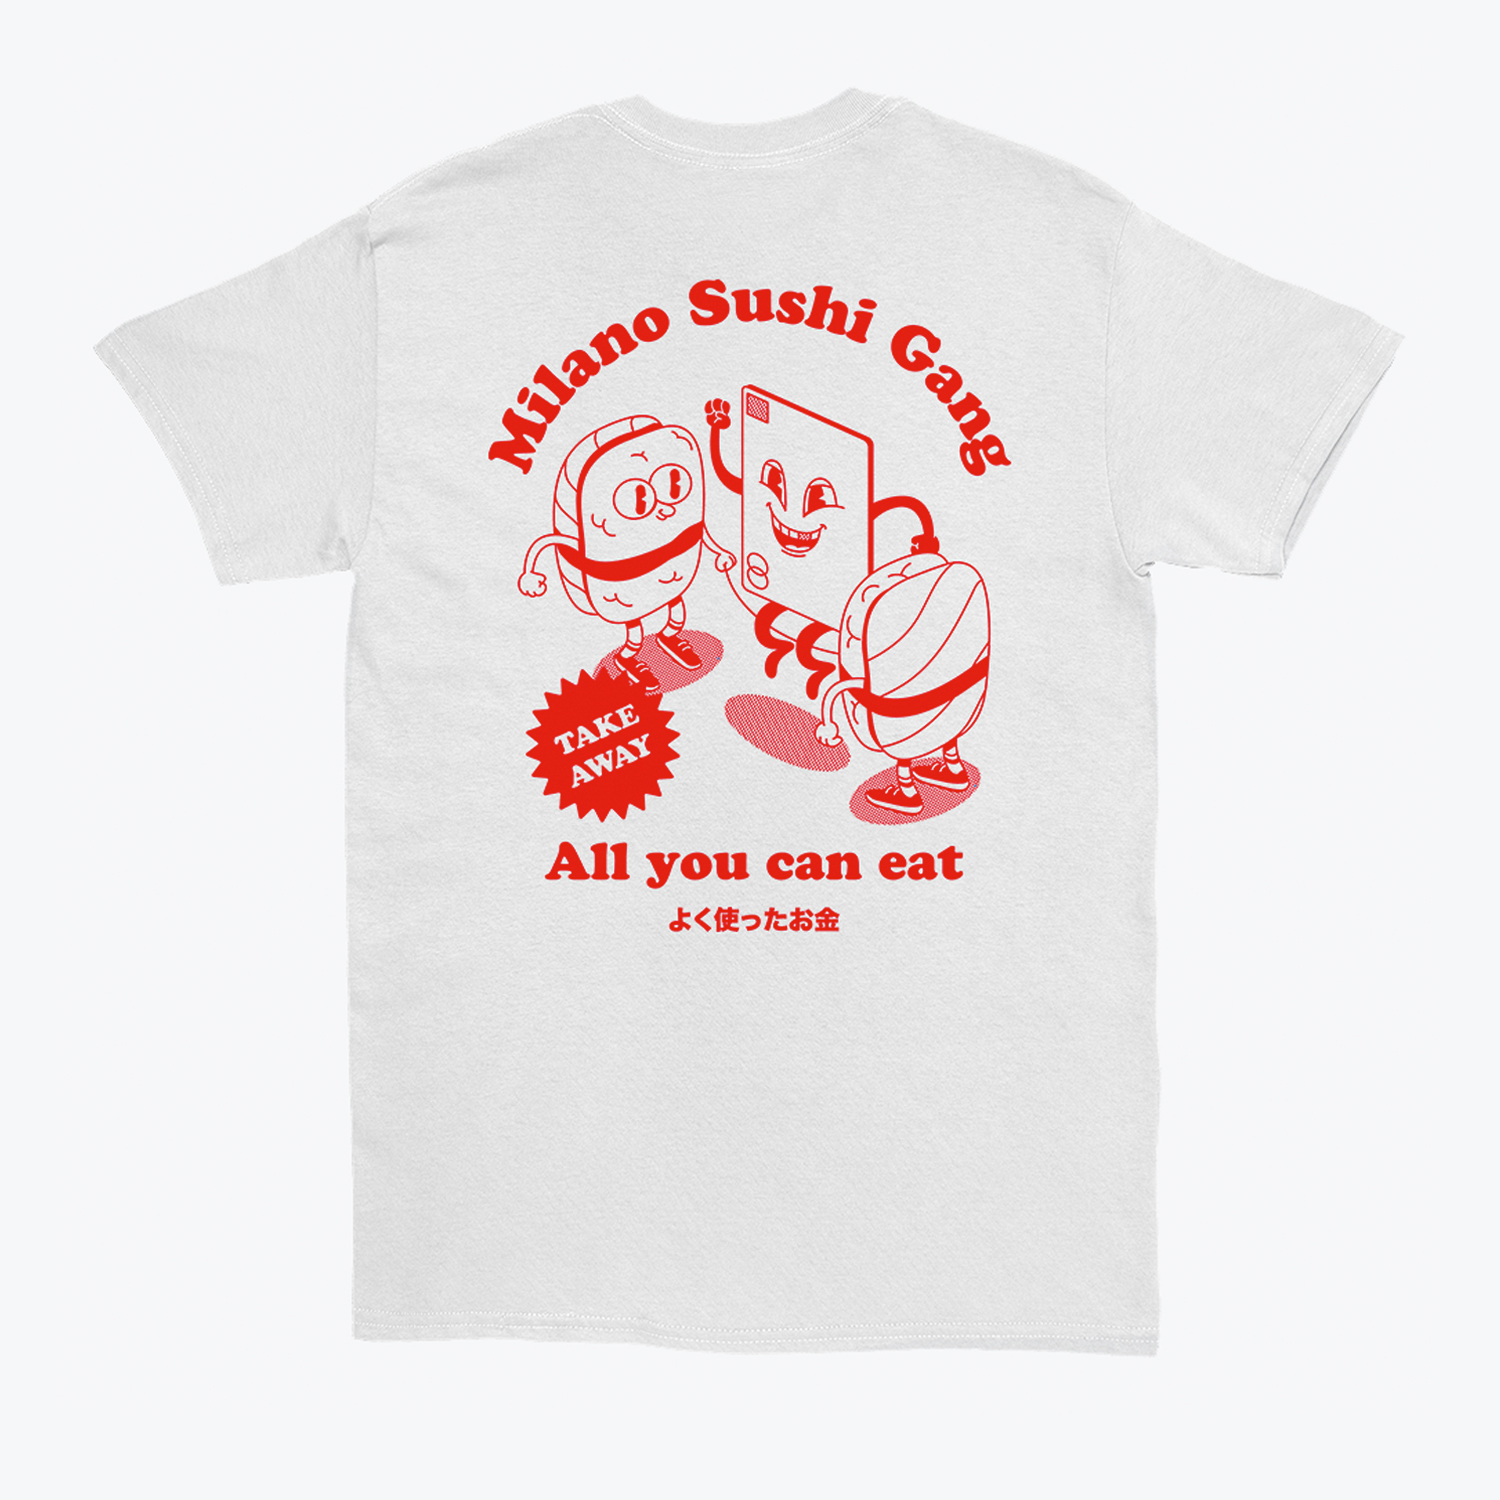 Marcello Pisano's 'Milano Sushi Gang T-shirt